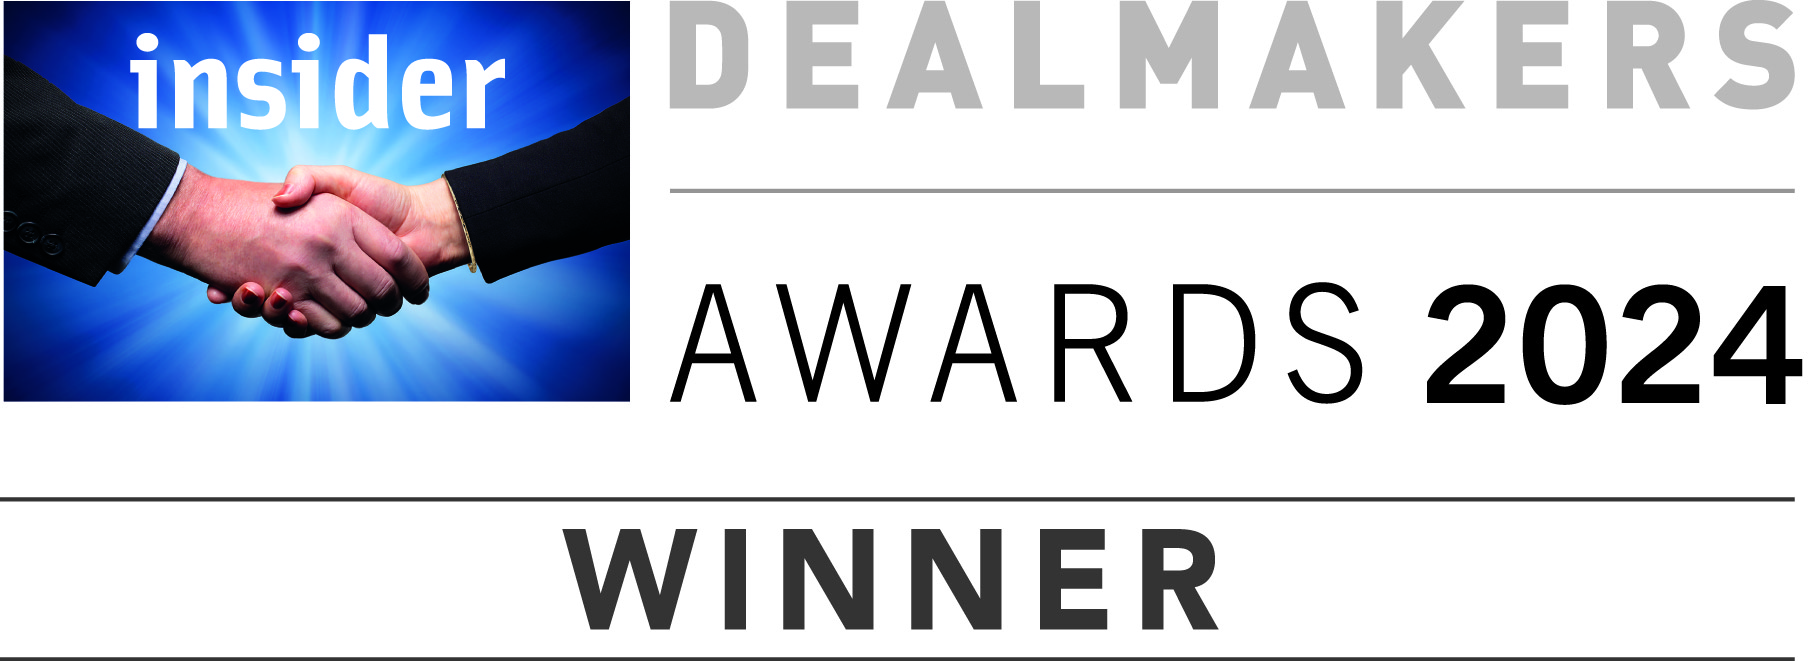 Dealmakers Award Winner 2024 Logo